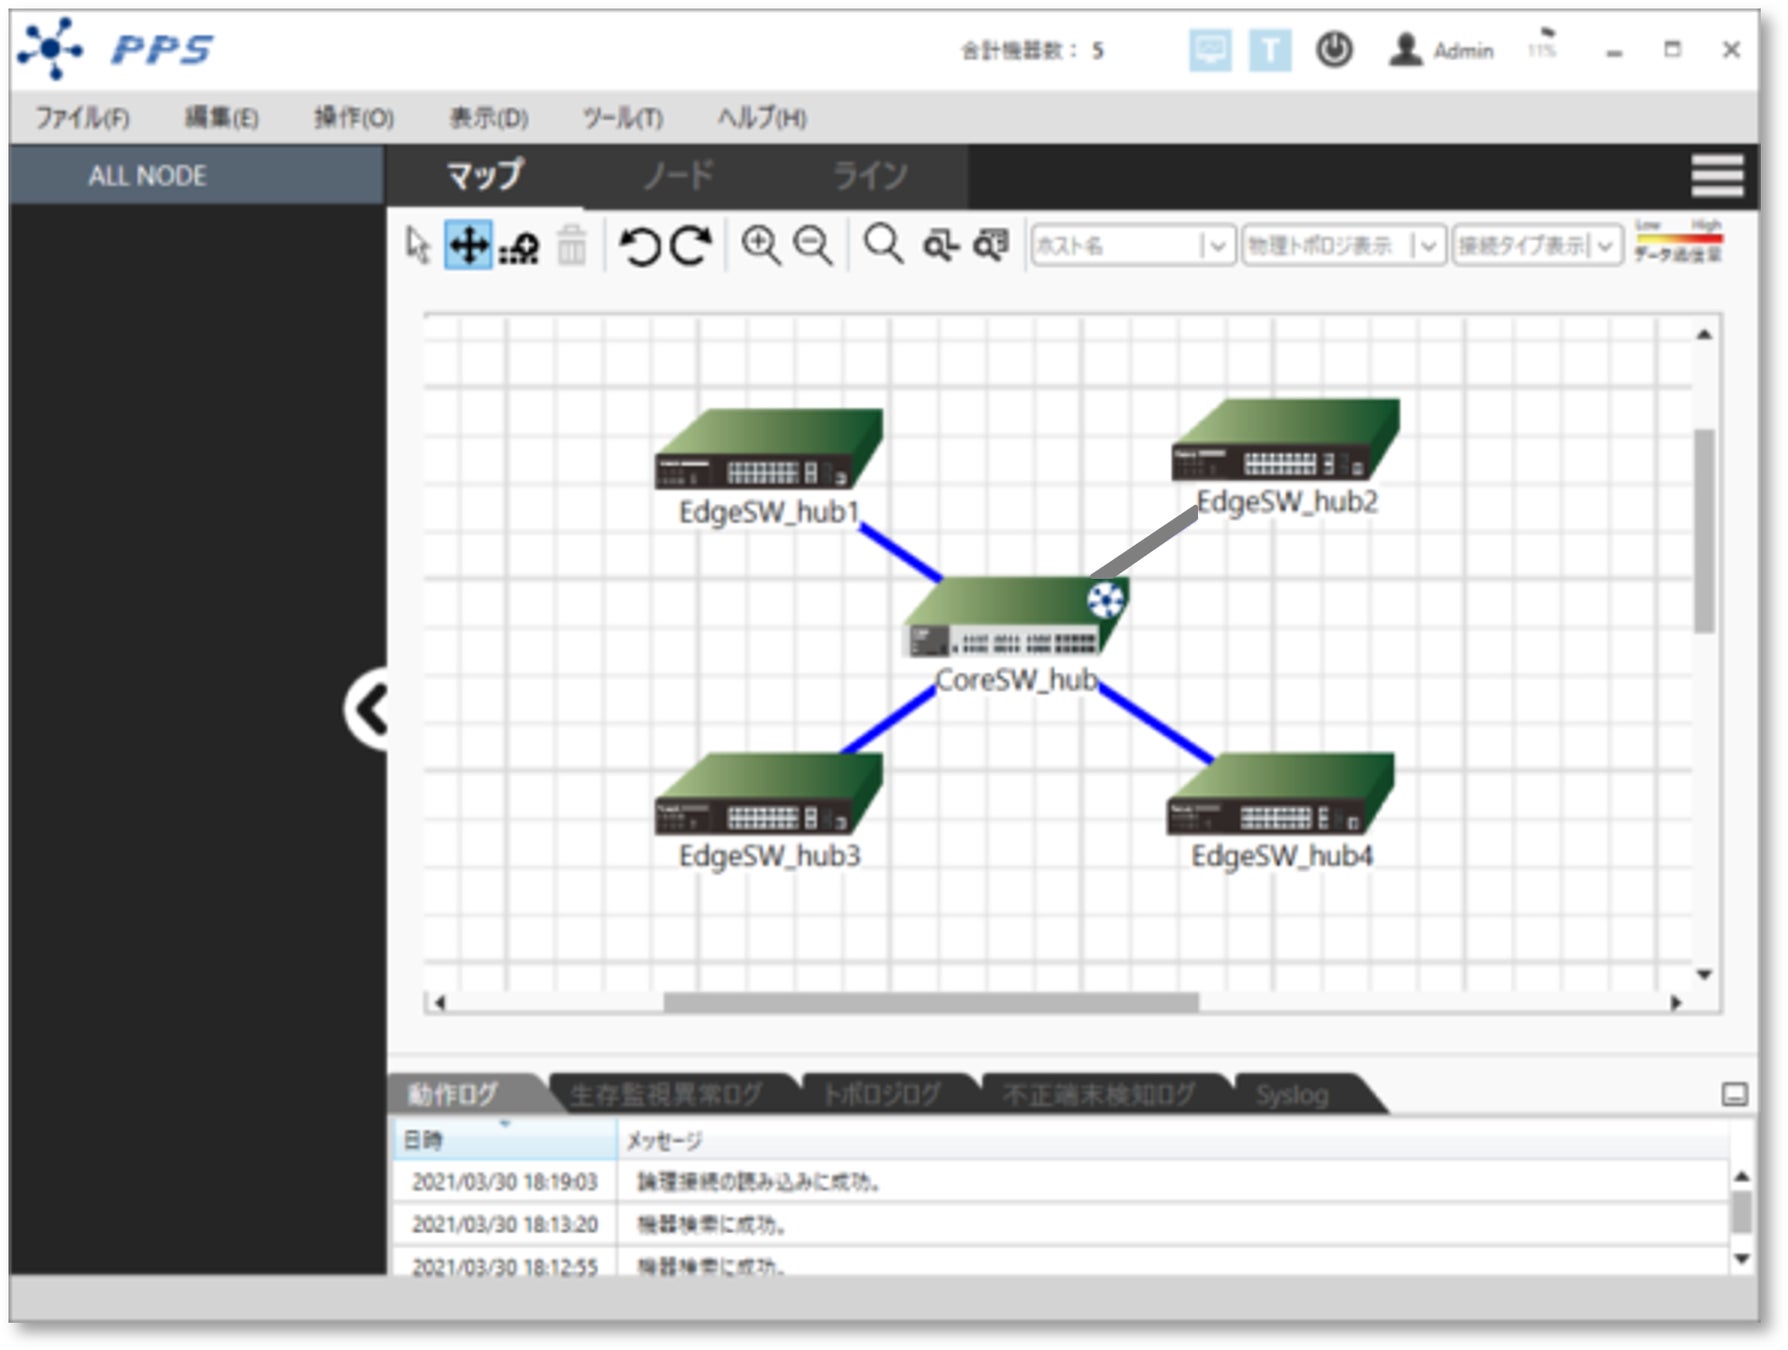 （イメージ） ネットワーク運用管理アプリケーション「PPS」管理画面。 ラインがグレー色の部分は、通信経路に異常があることを示します。